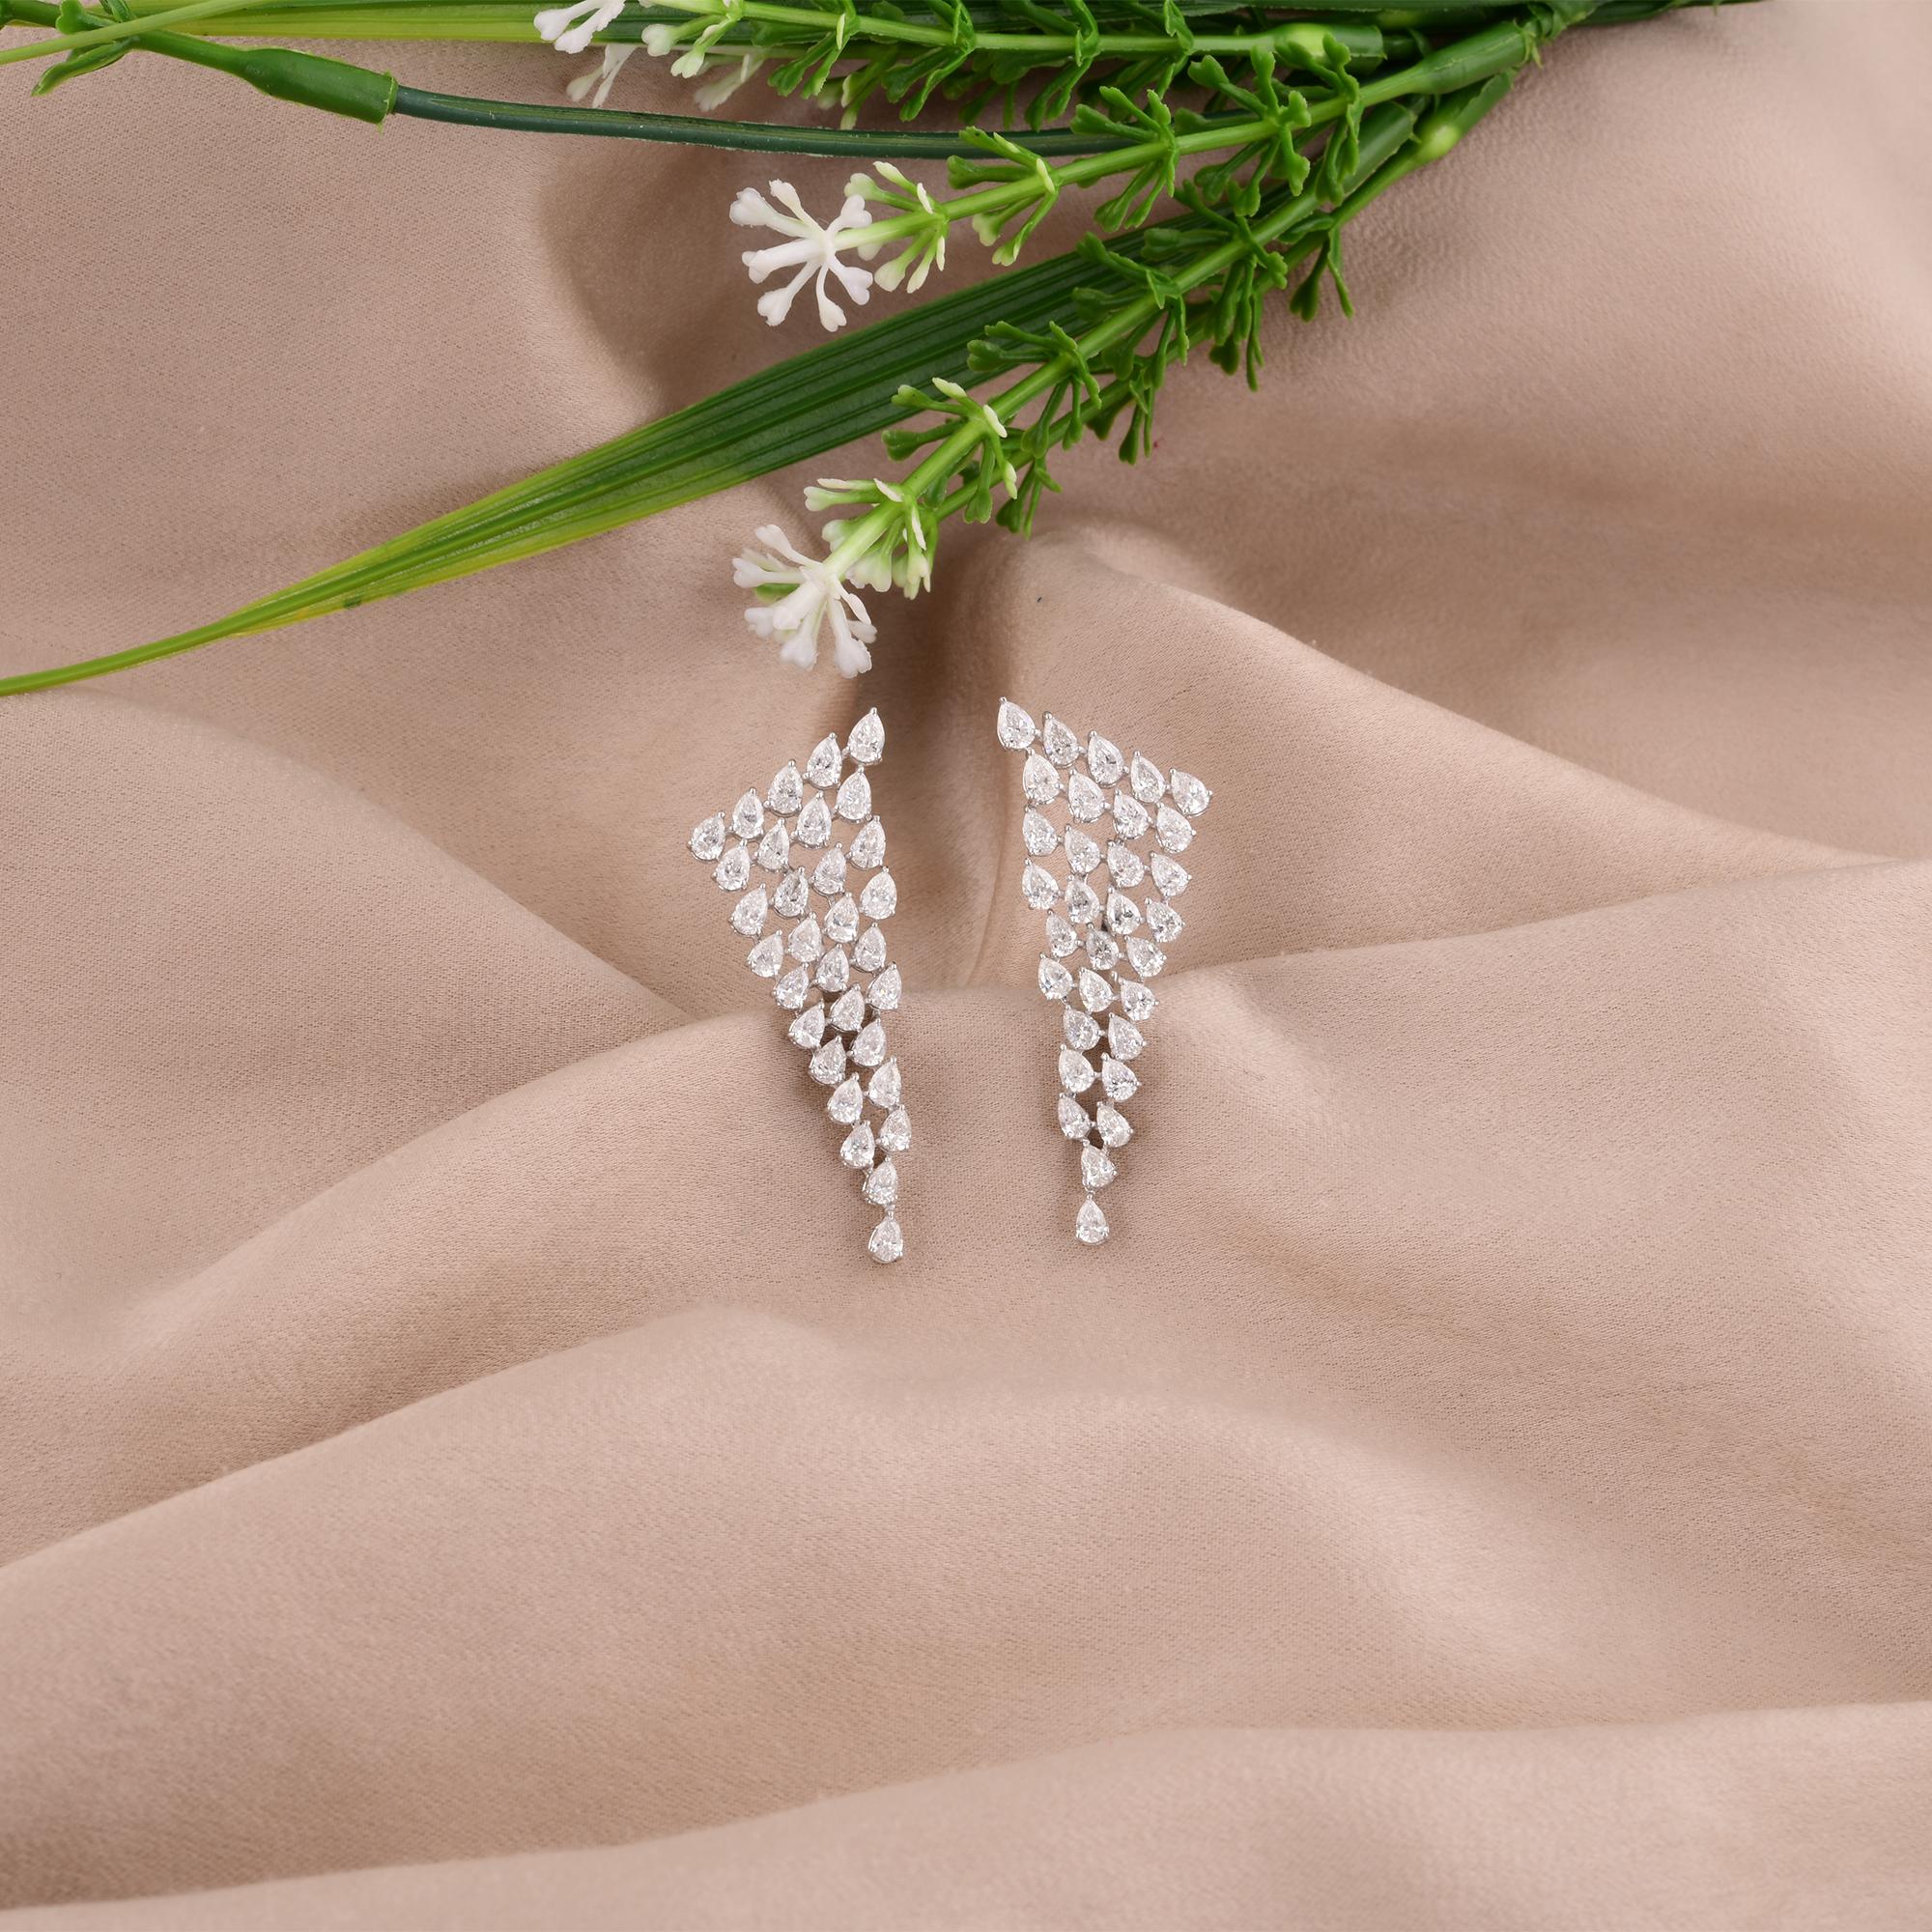 Wir stellen vor  Natürliche 4,81-Karat-Diamantohrringe in Birnenform, ein faszinierender Ausdruck von Luxus und Eleganz. Diese in sorgfältiger Handarbeit aus 18 Karat Weißgold gefertigten Ohrringe bestechen durch ihre birnenförmigen Diamanten, die